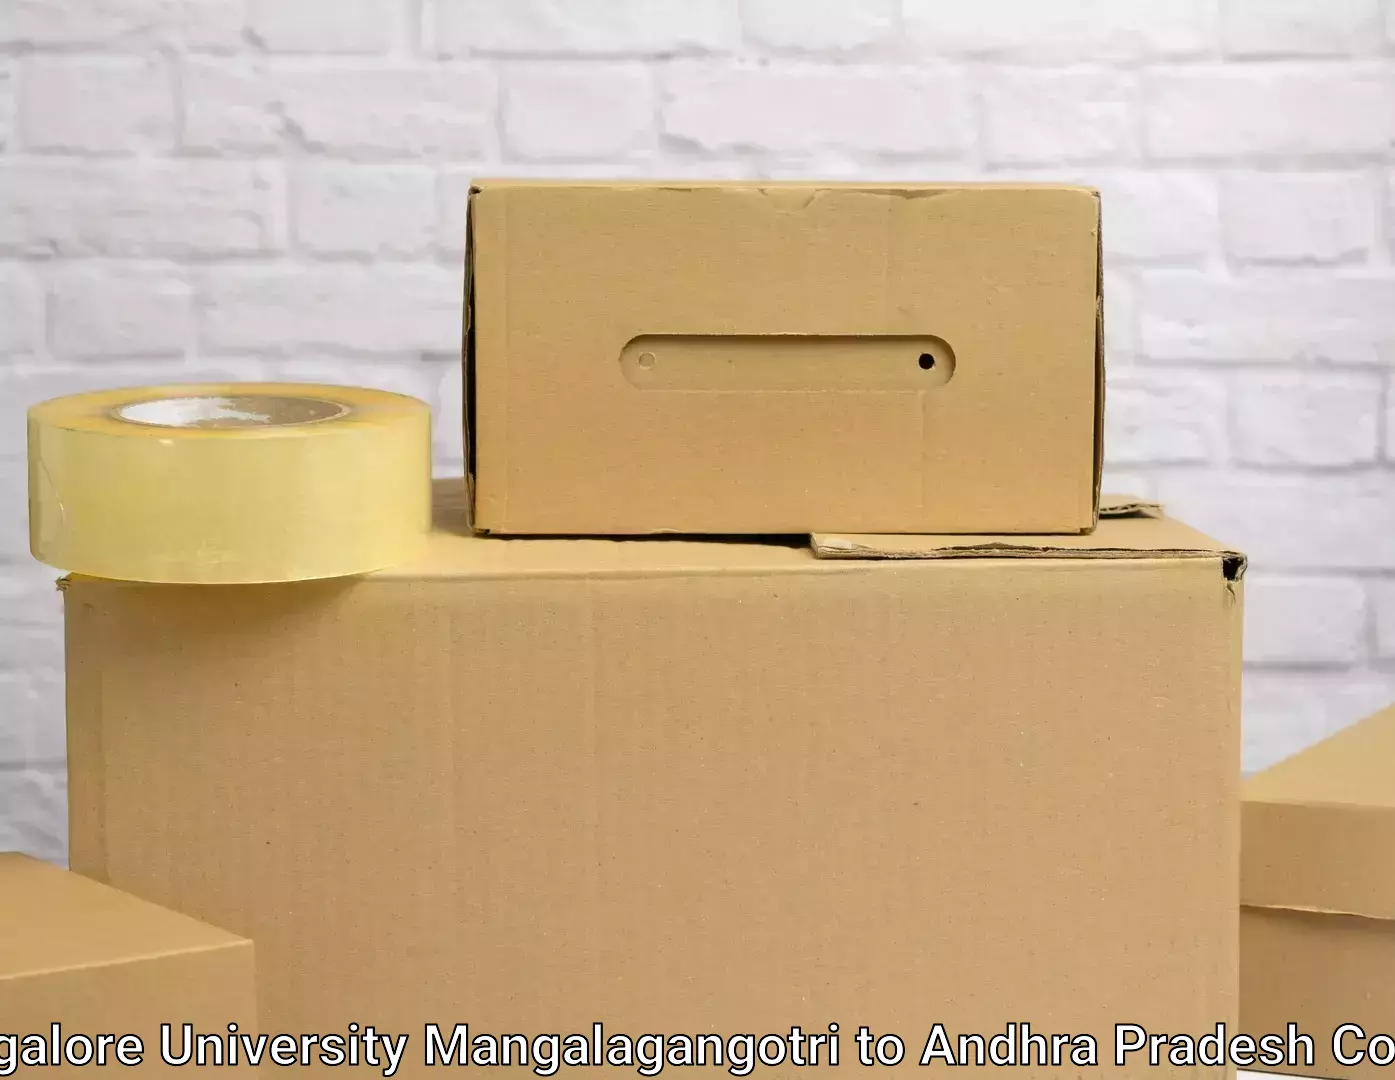 Efficient packing and moving Mangalore University Mangalagangotri to Venkatagiri